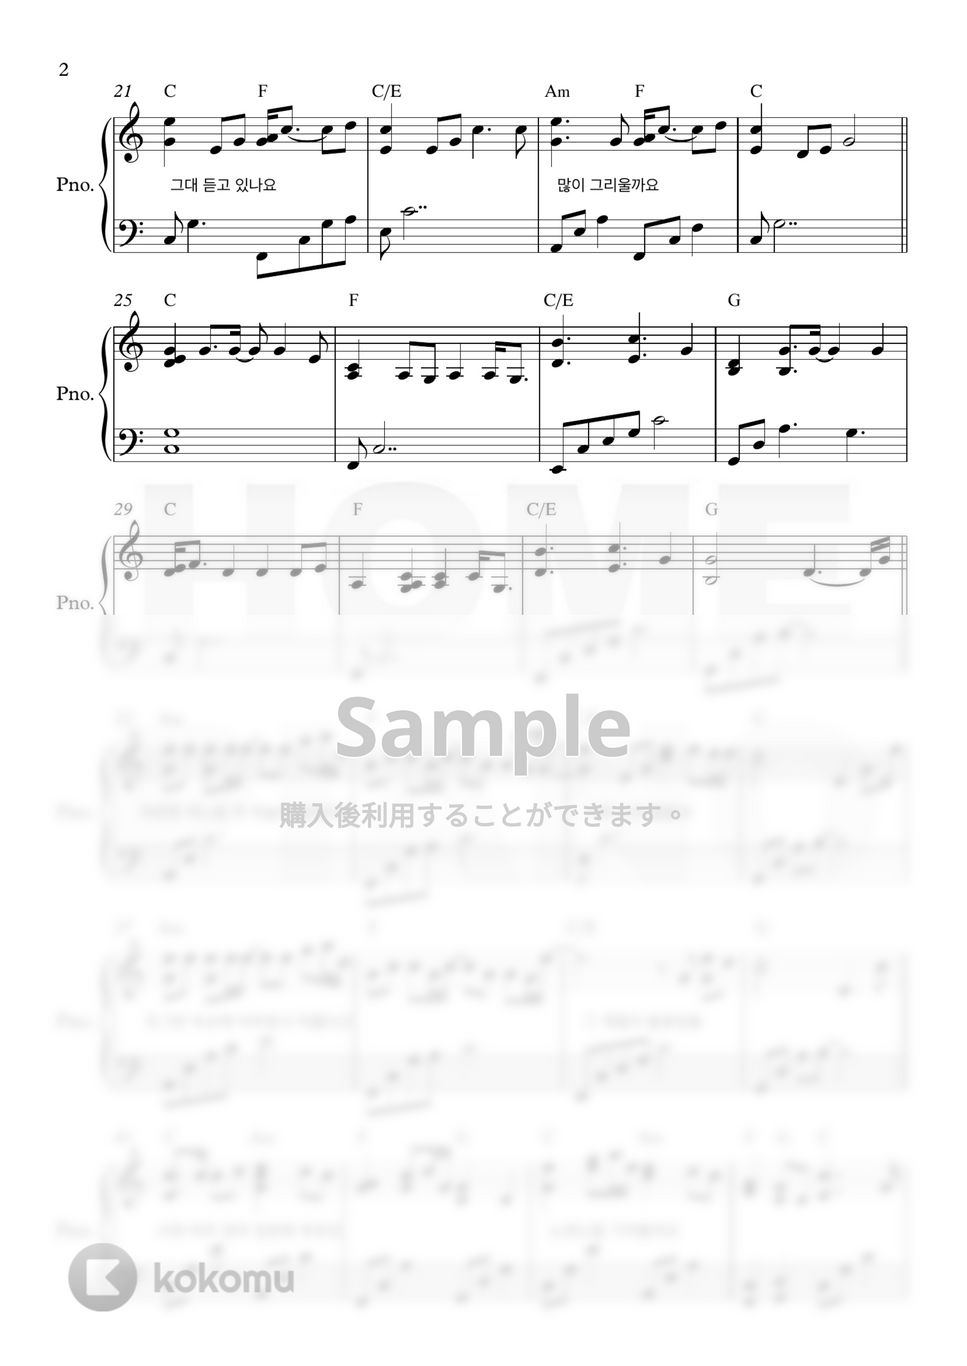 愛の不時着 OST - 懐かしの丘 (上級) by HOME PIANO